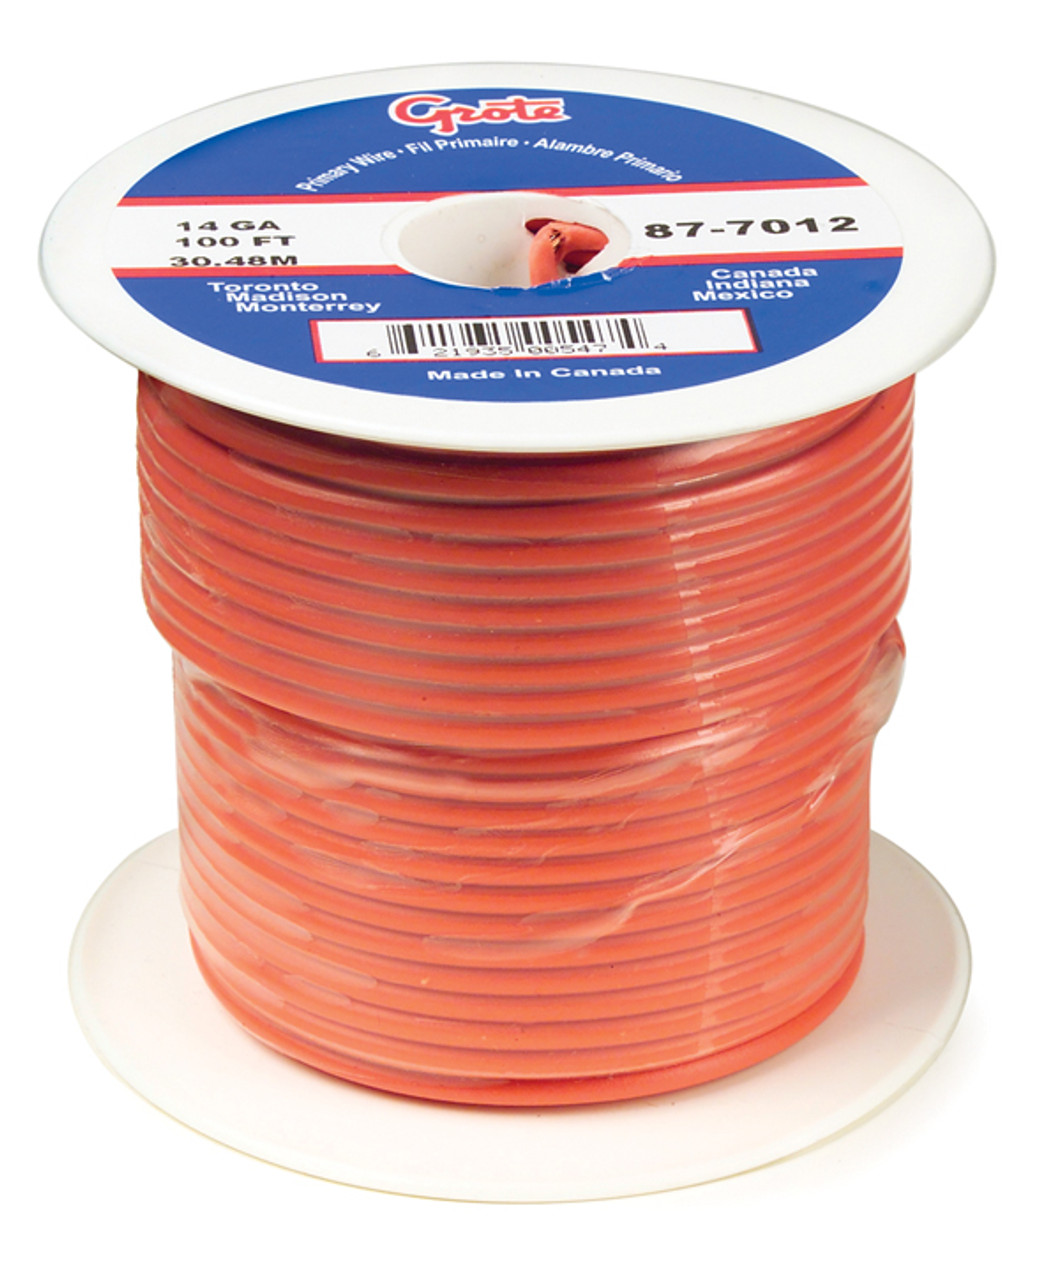 16 AWG General Purpose Thermo Plastic Wire @ 25' - Orange  89-8012